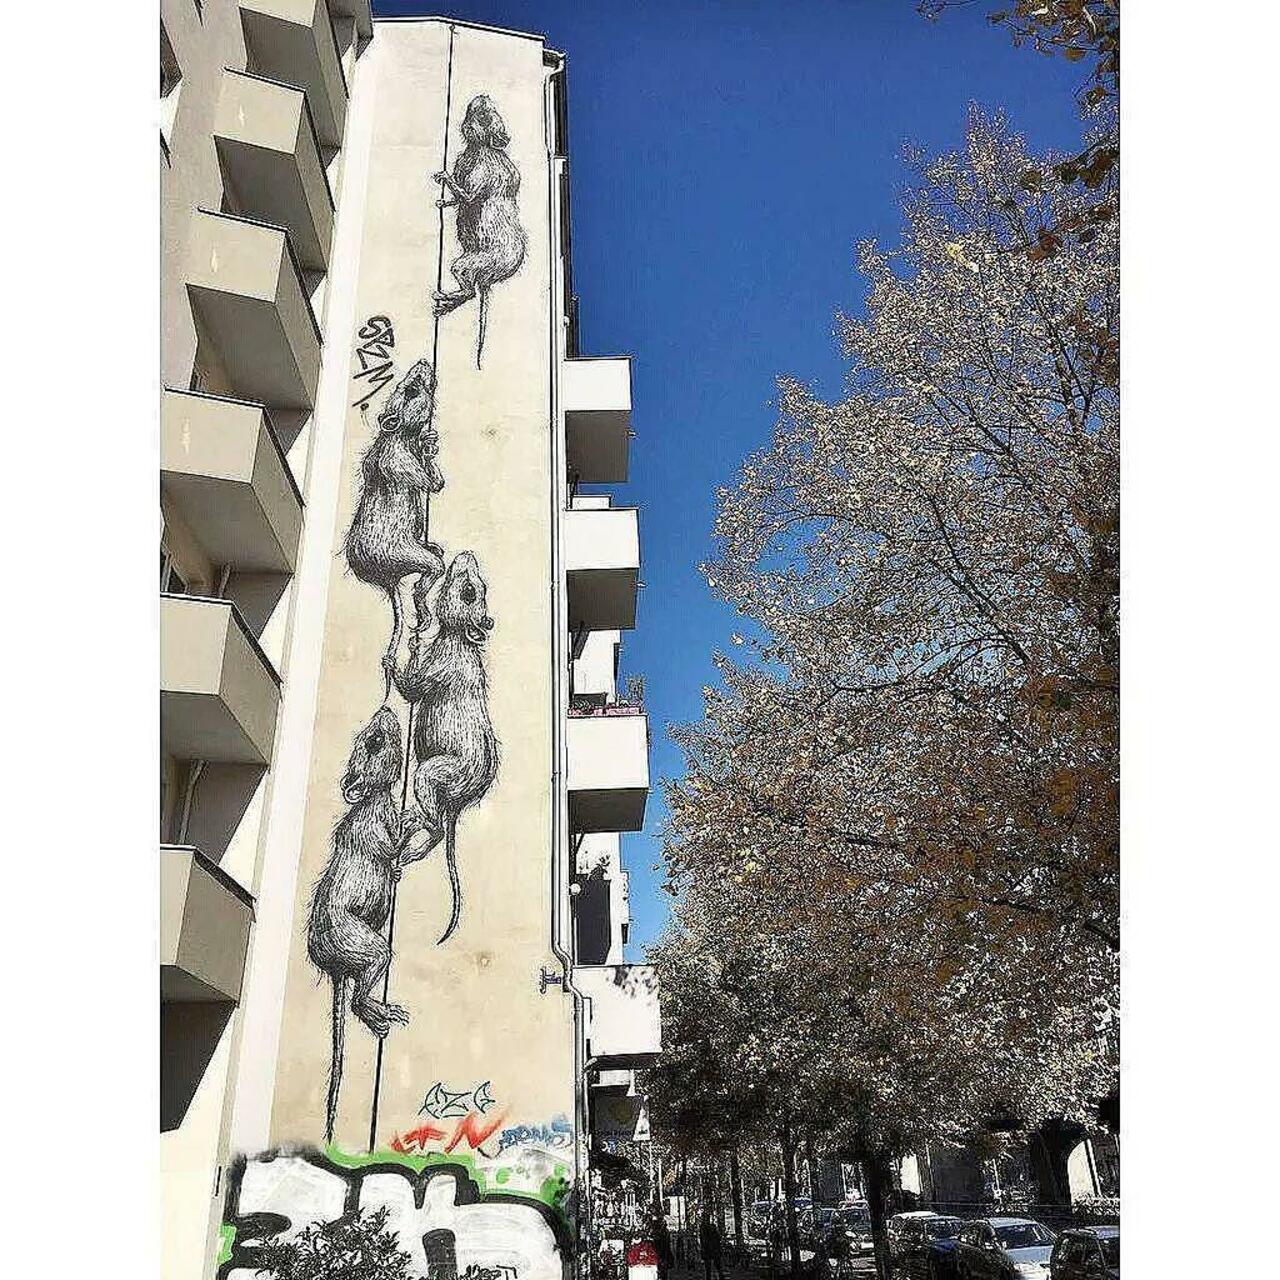 RAT 
#streetart #streetartberlin #wall #wallart #graffiti #berlin #dubistsowunderbar #urbanstreetart #art #mural by… http://t.co/JK2DOZCly4